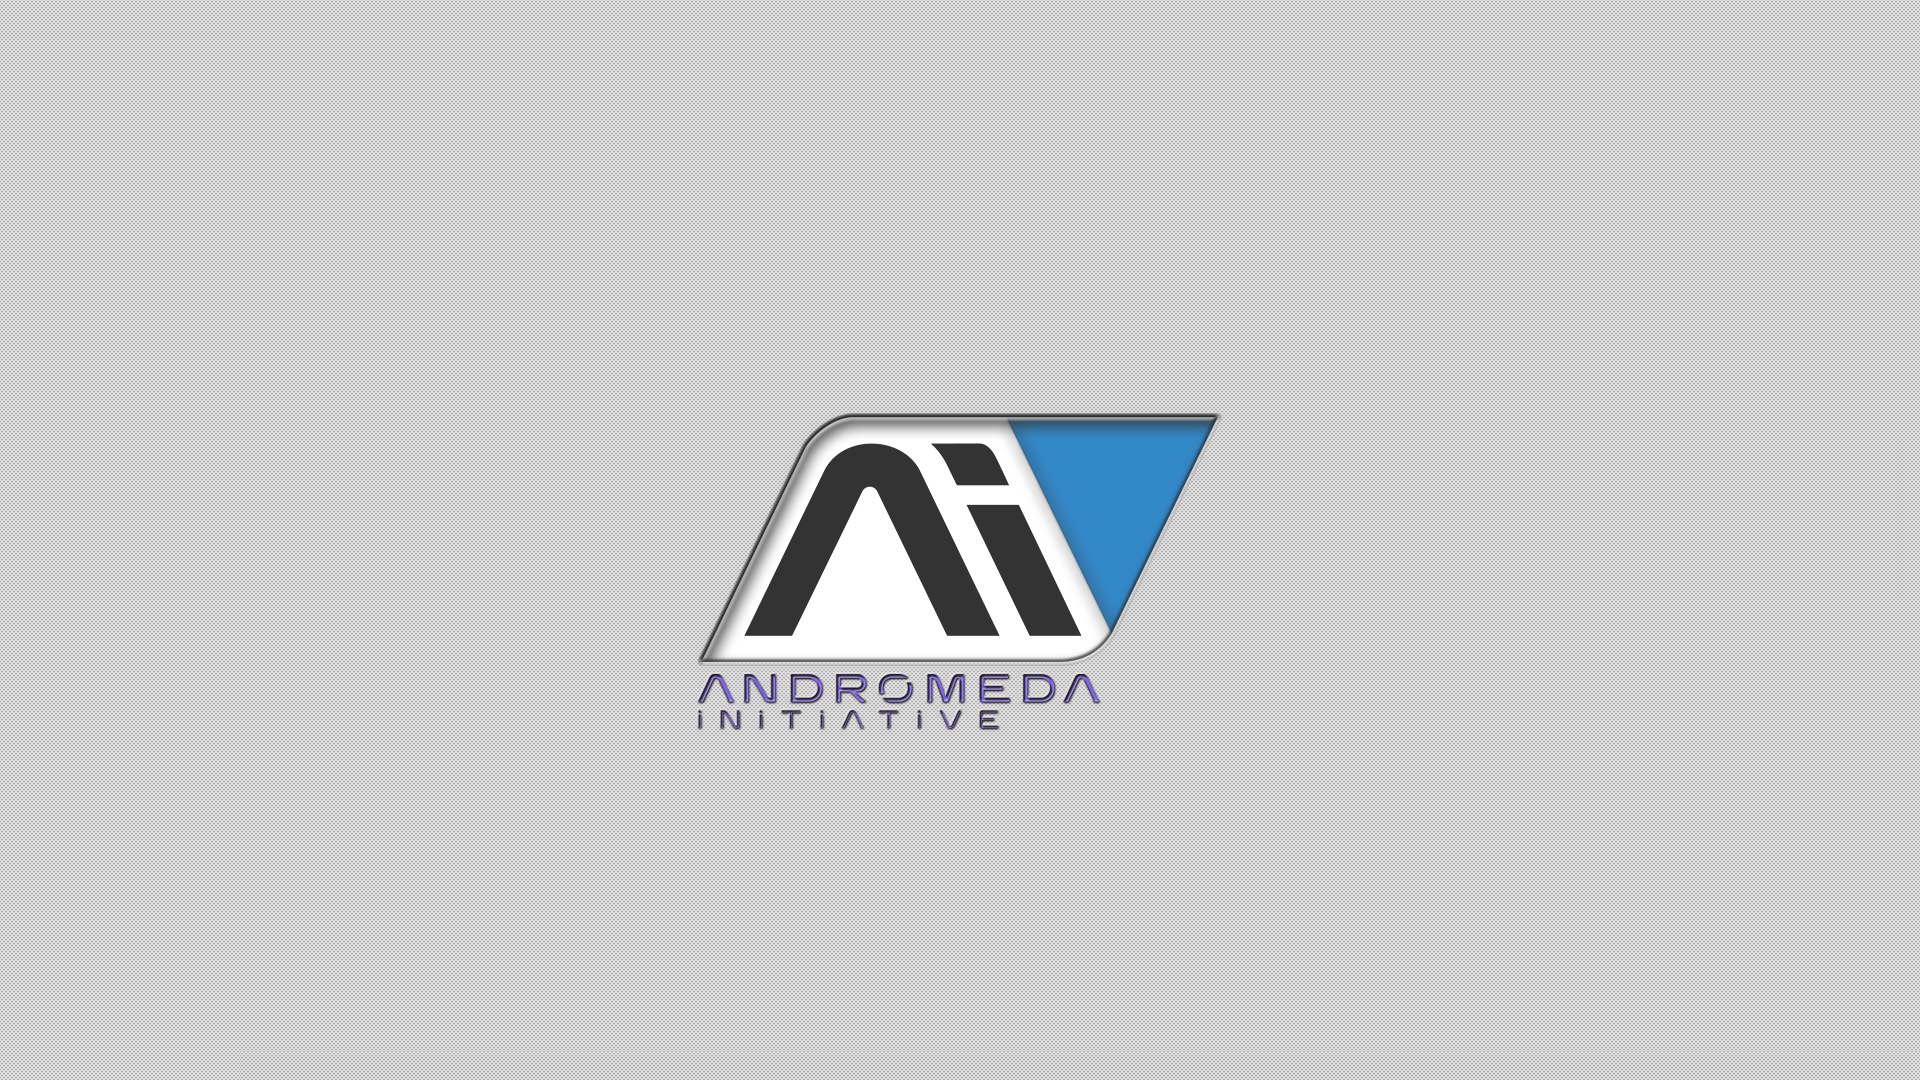 Andromeda Initiative Phone Wallpapers